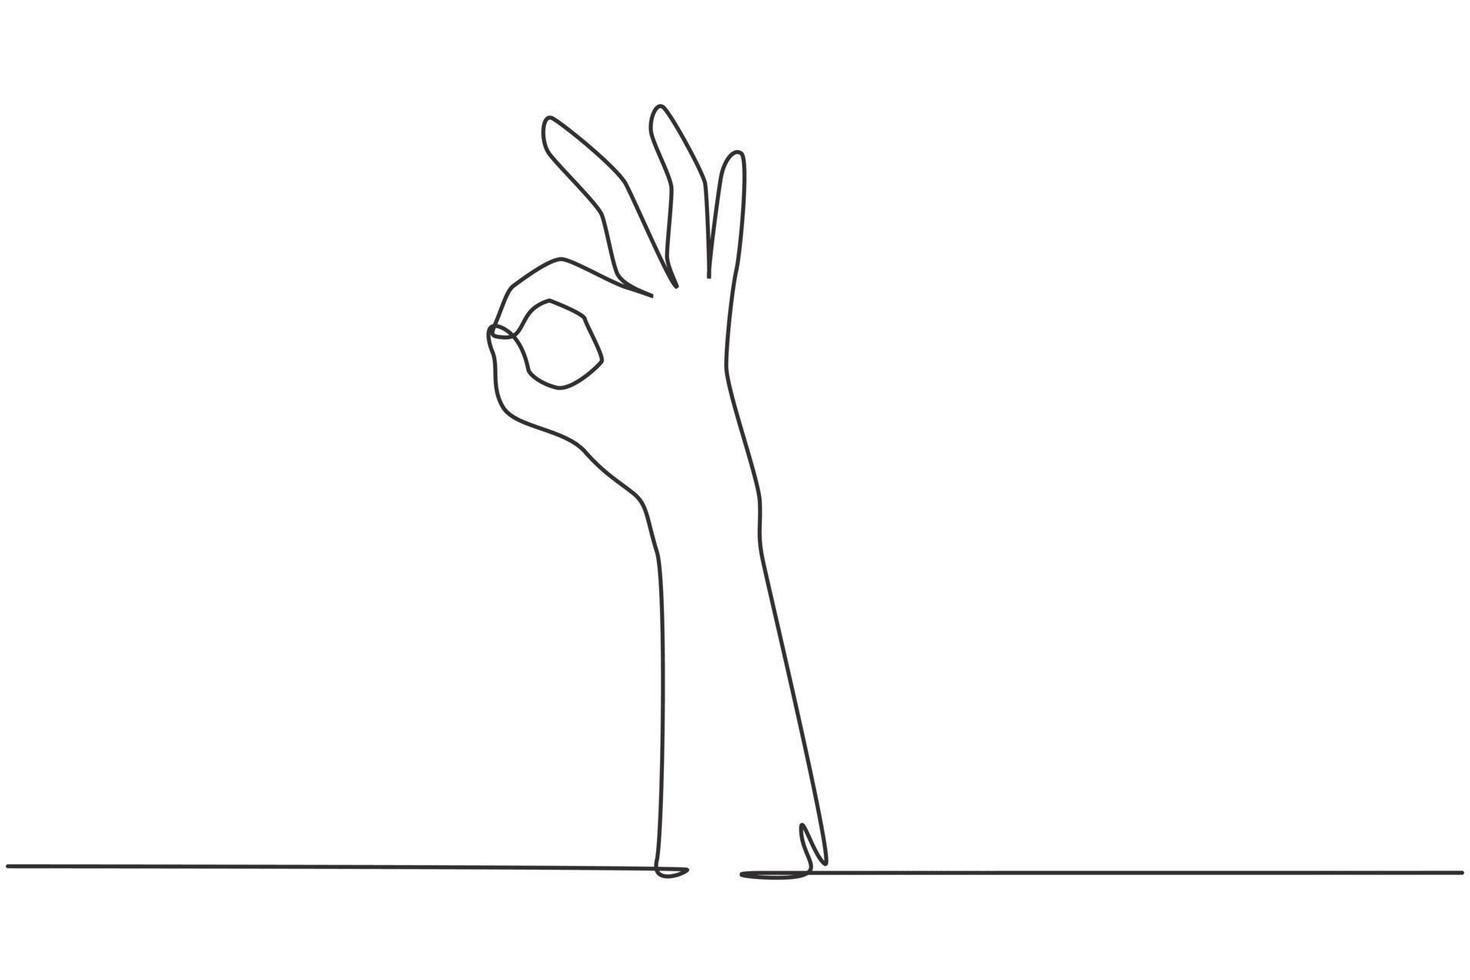 en rad ritad hand som visar okej eller perfekt gest. nummer tre handräkning. lär dig räkna siffror. icke-verbala tecken eller symboler. kontinuerlig linje rita design grafisk vektorillustration vektor